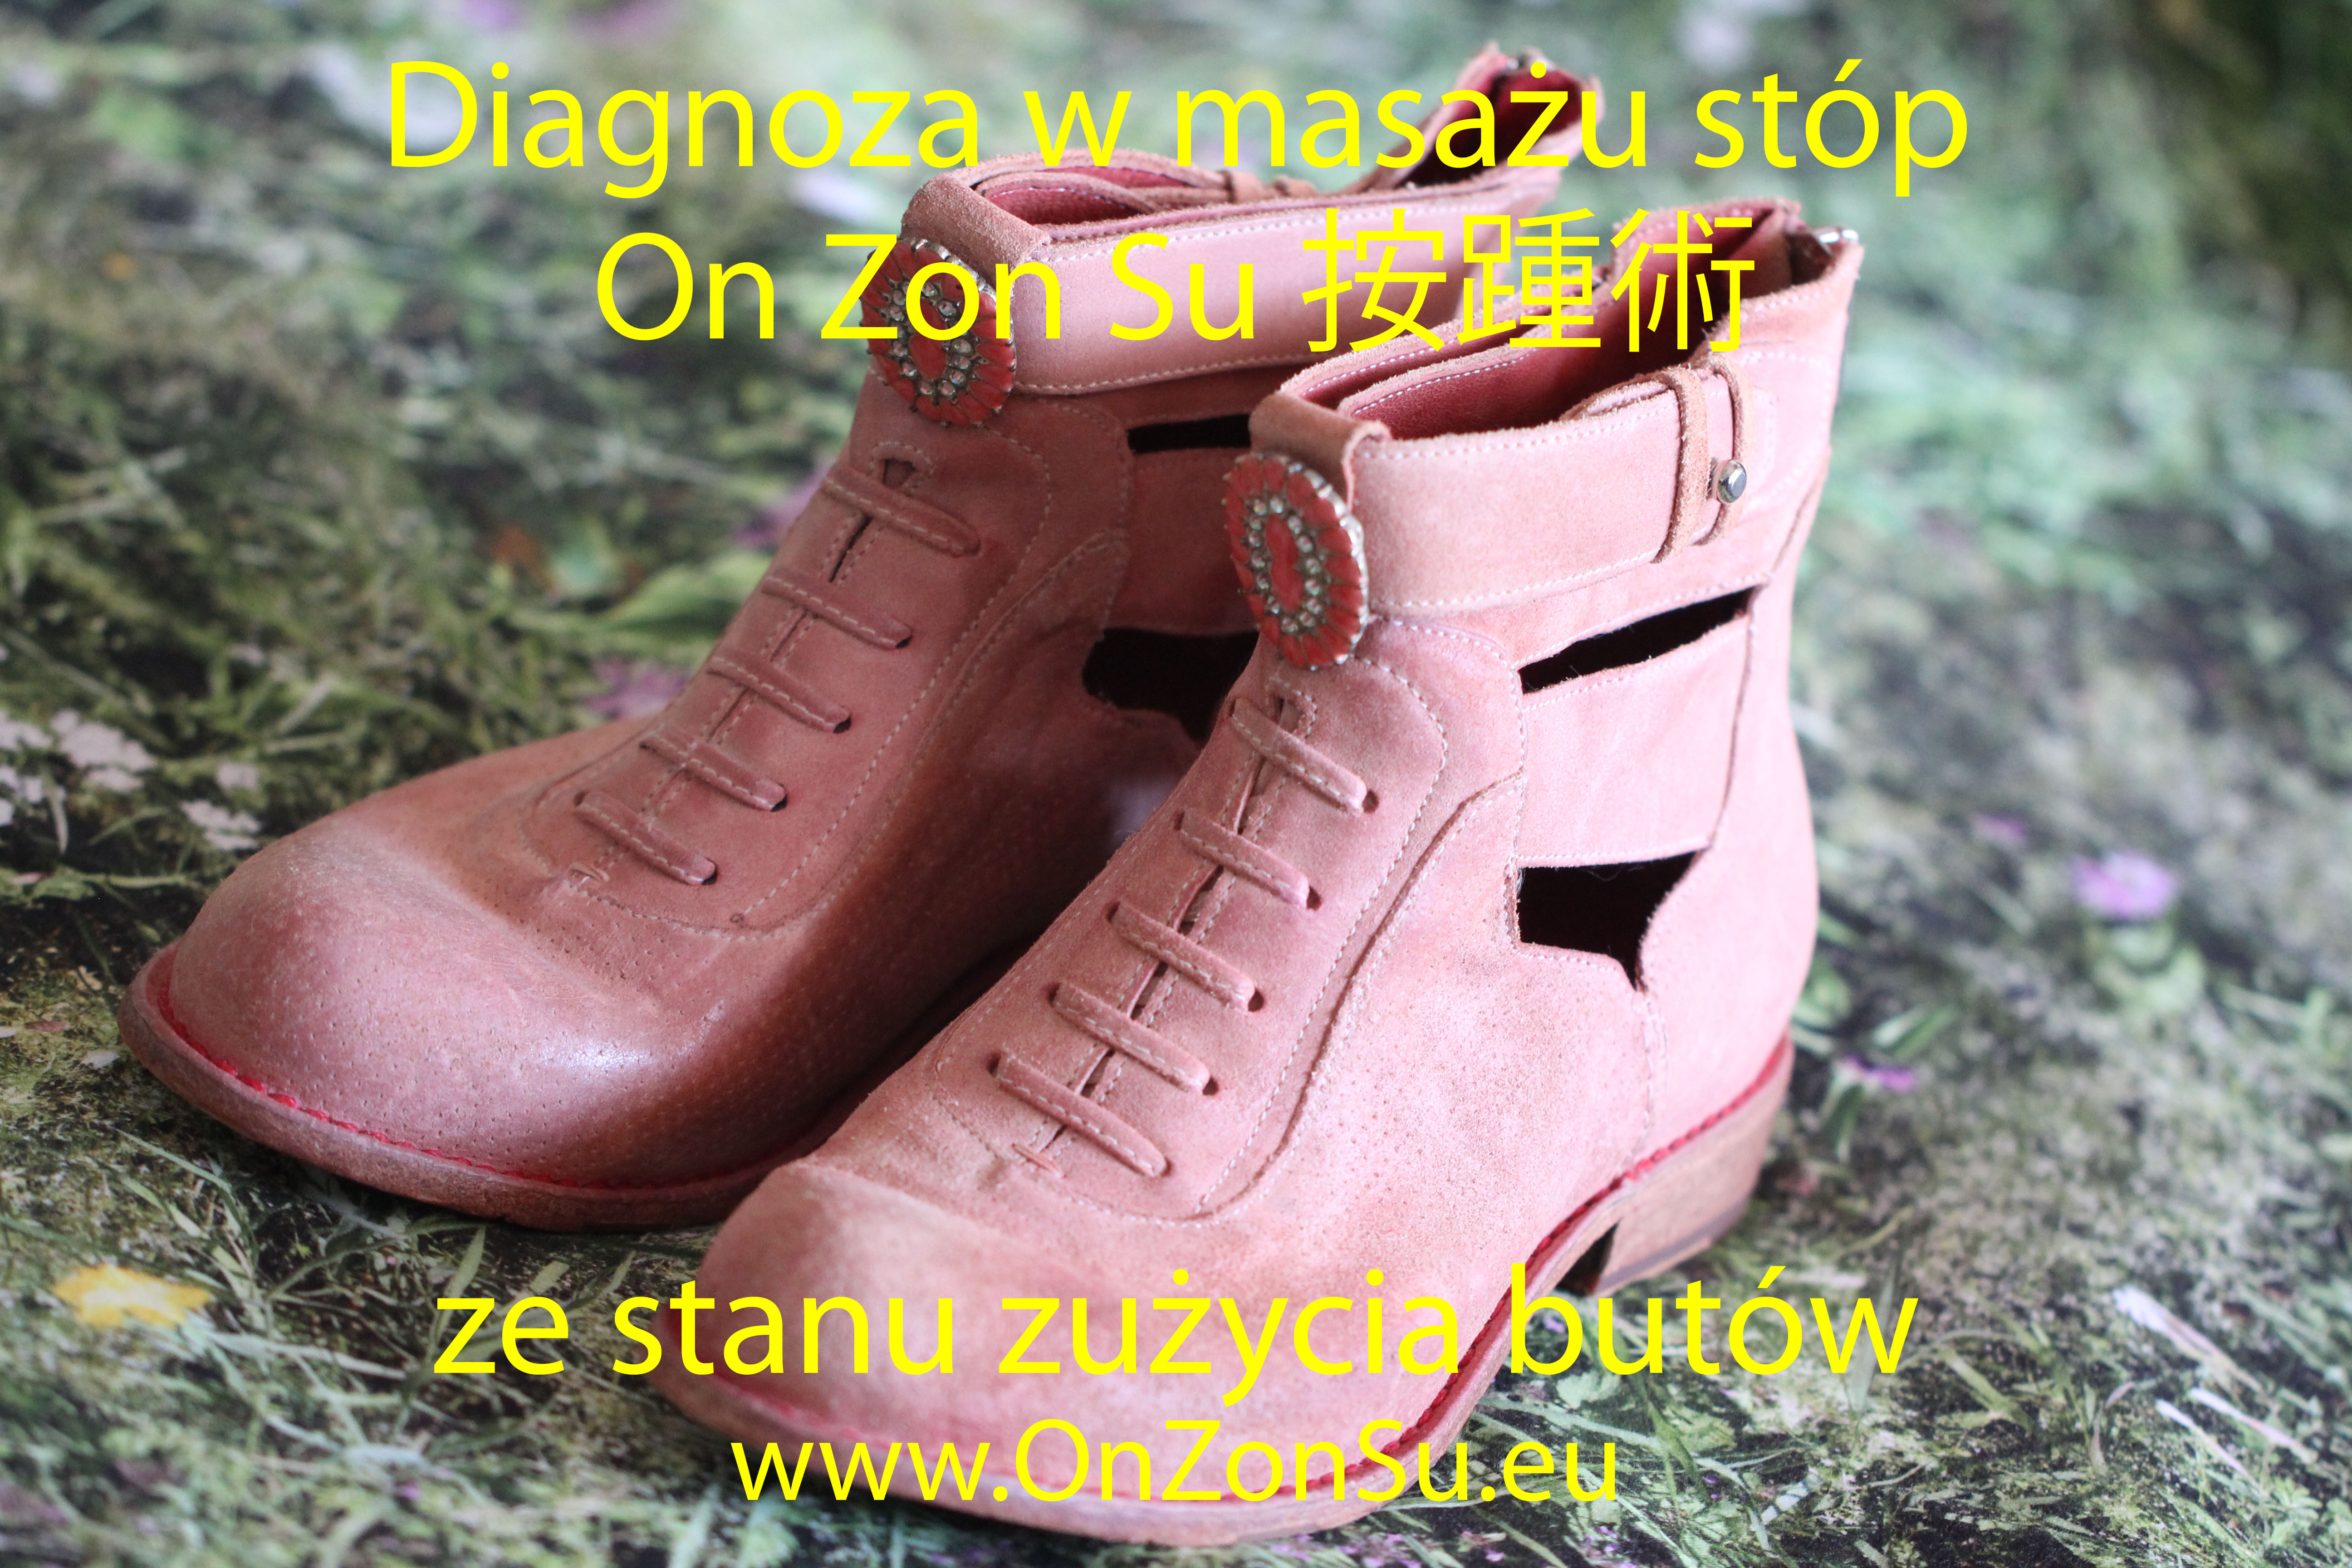 Kurs masażu stóp On Zon Su, Szkolenia refleksologii stóp - Diagnoza na podstawie stanu zużycia butów IMG_7181_MEM.jpg